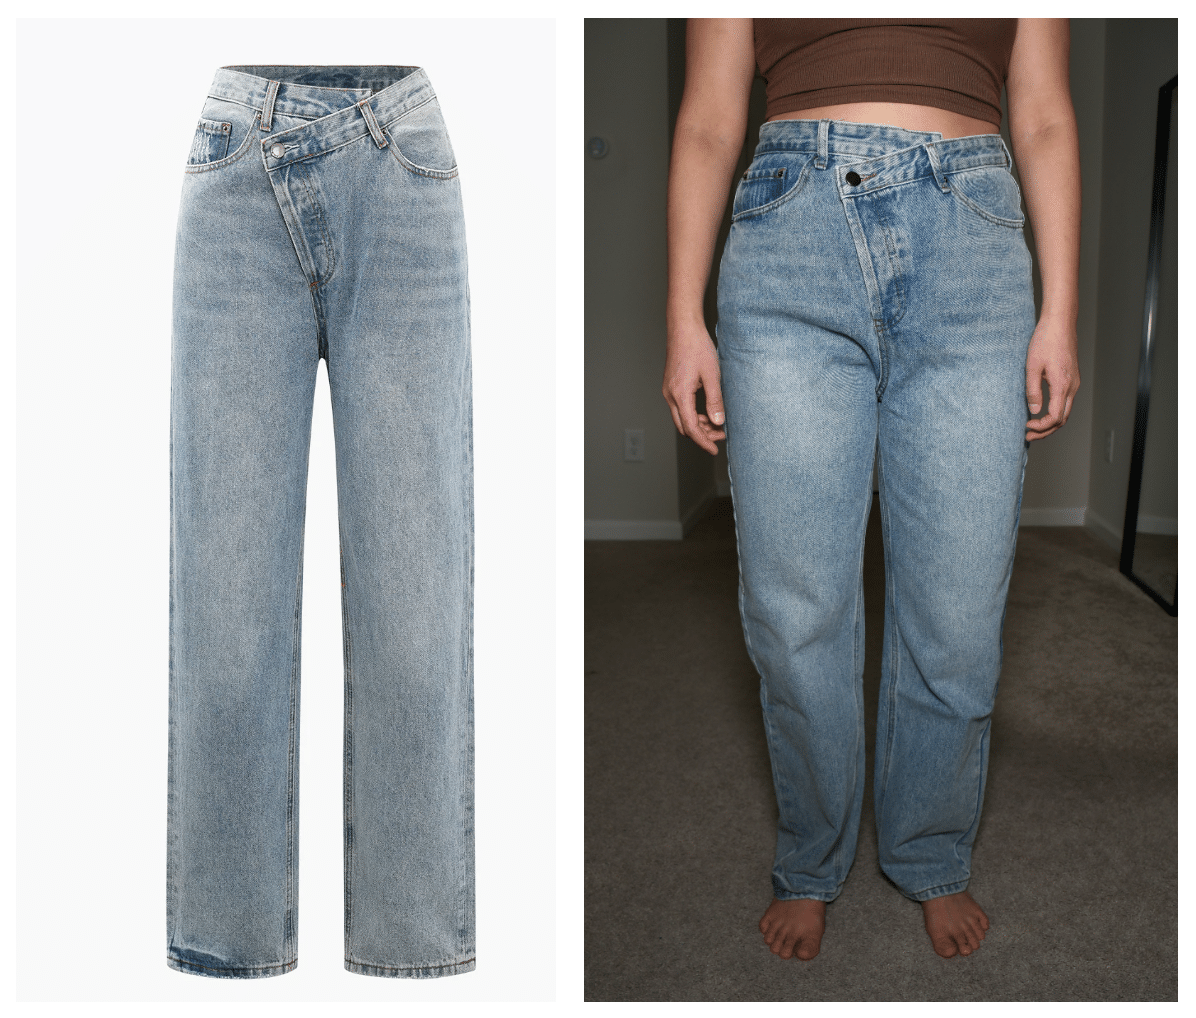 micas jeans comparison